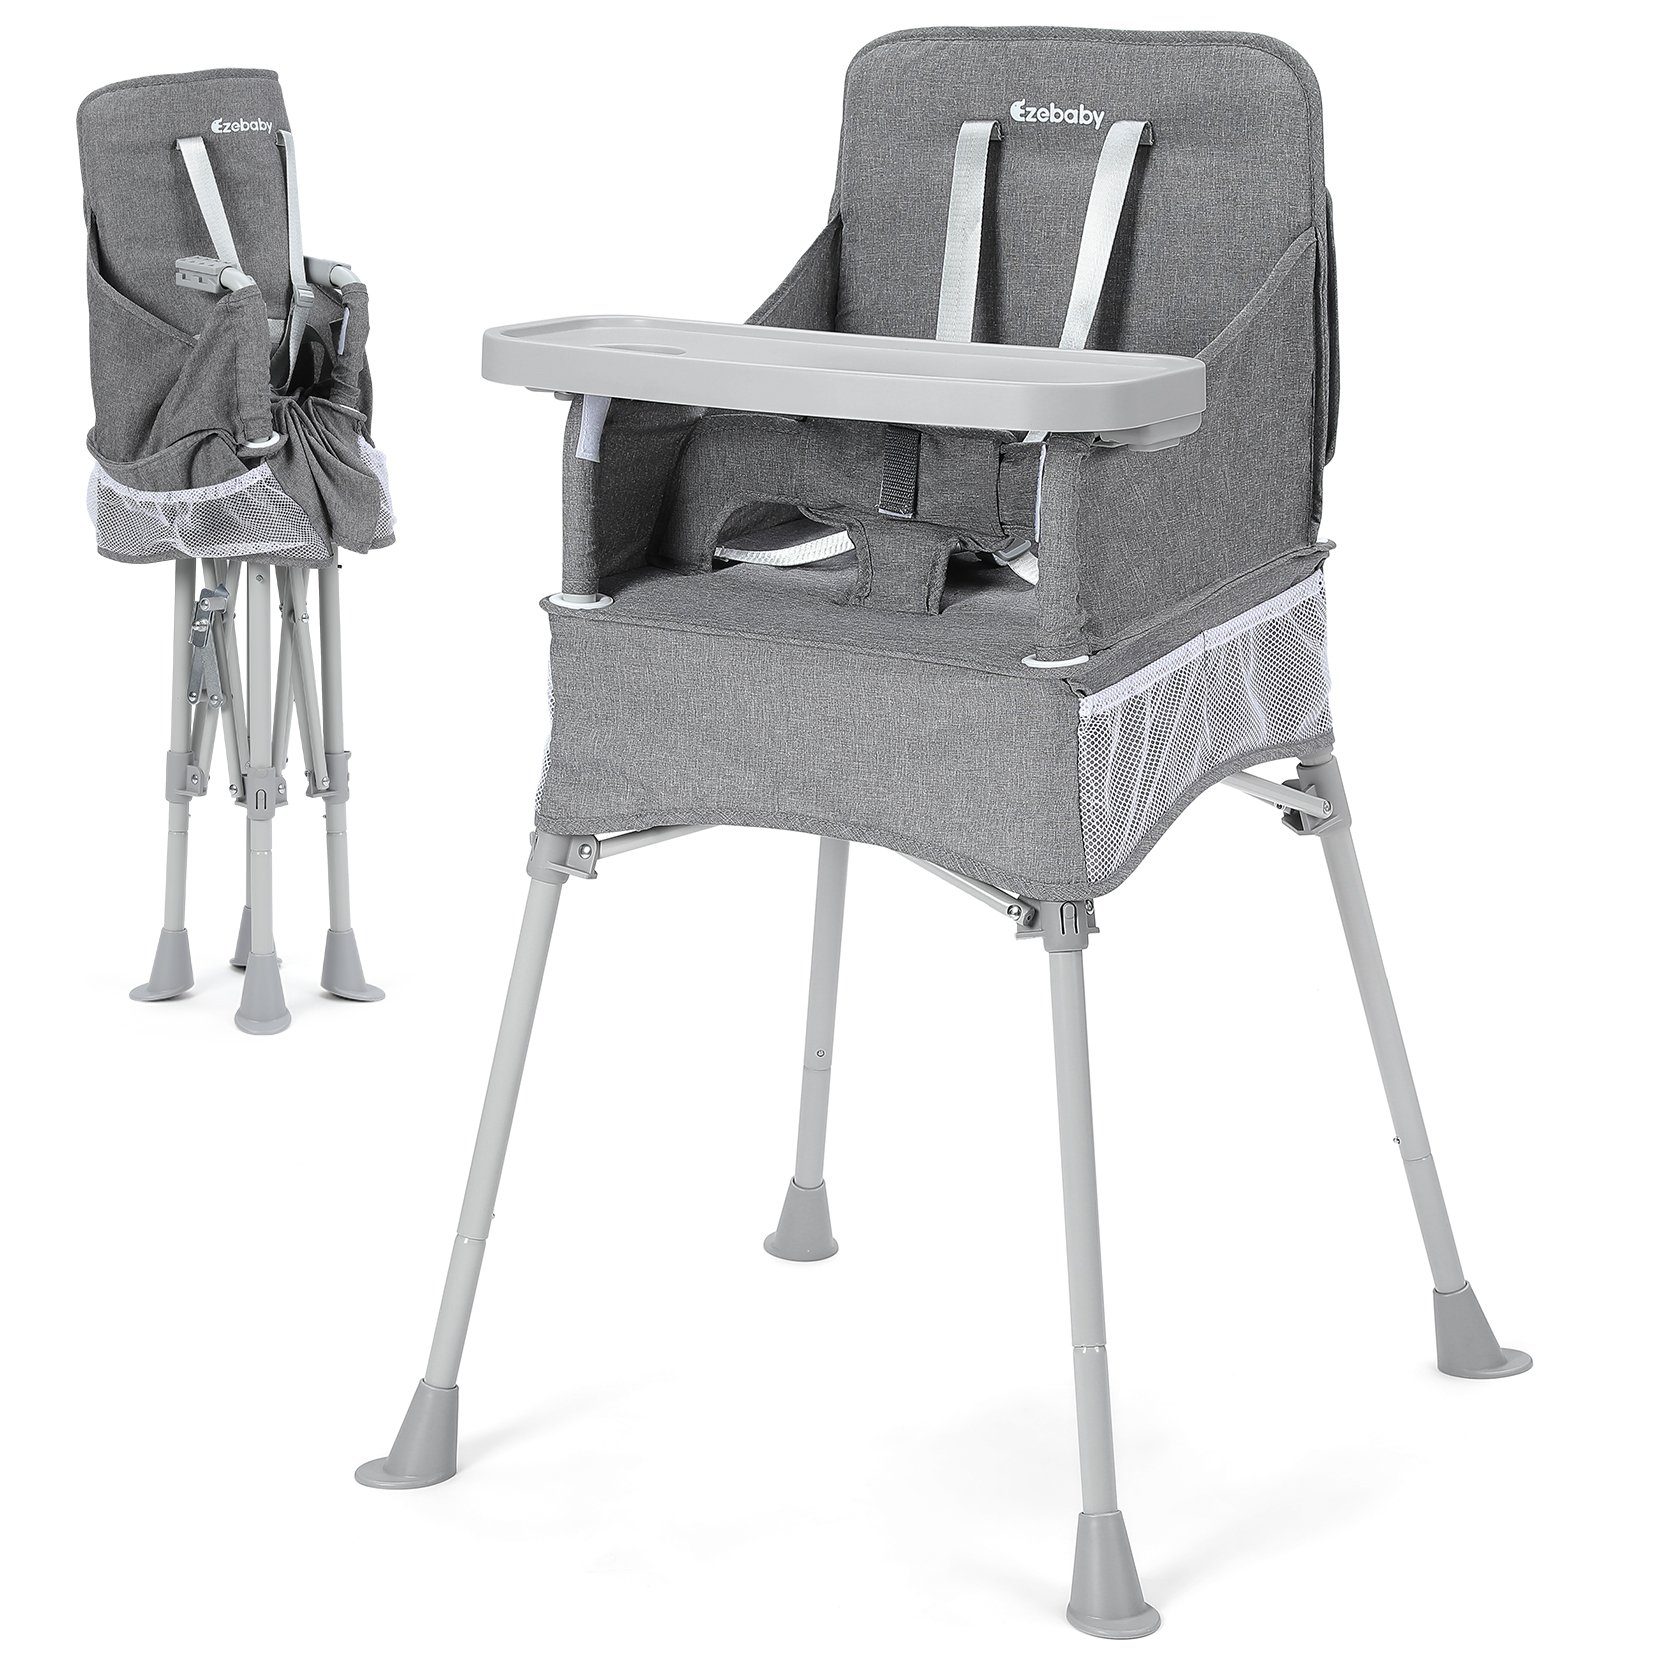 Ezebaby Hochstuhl Baby Camping Stuhl Faltbar Kinderstuhl mit Tablett und Tragtasche